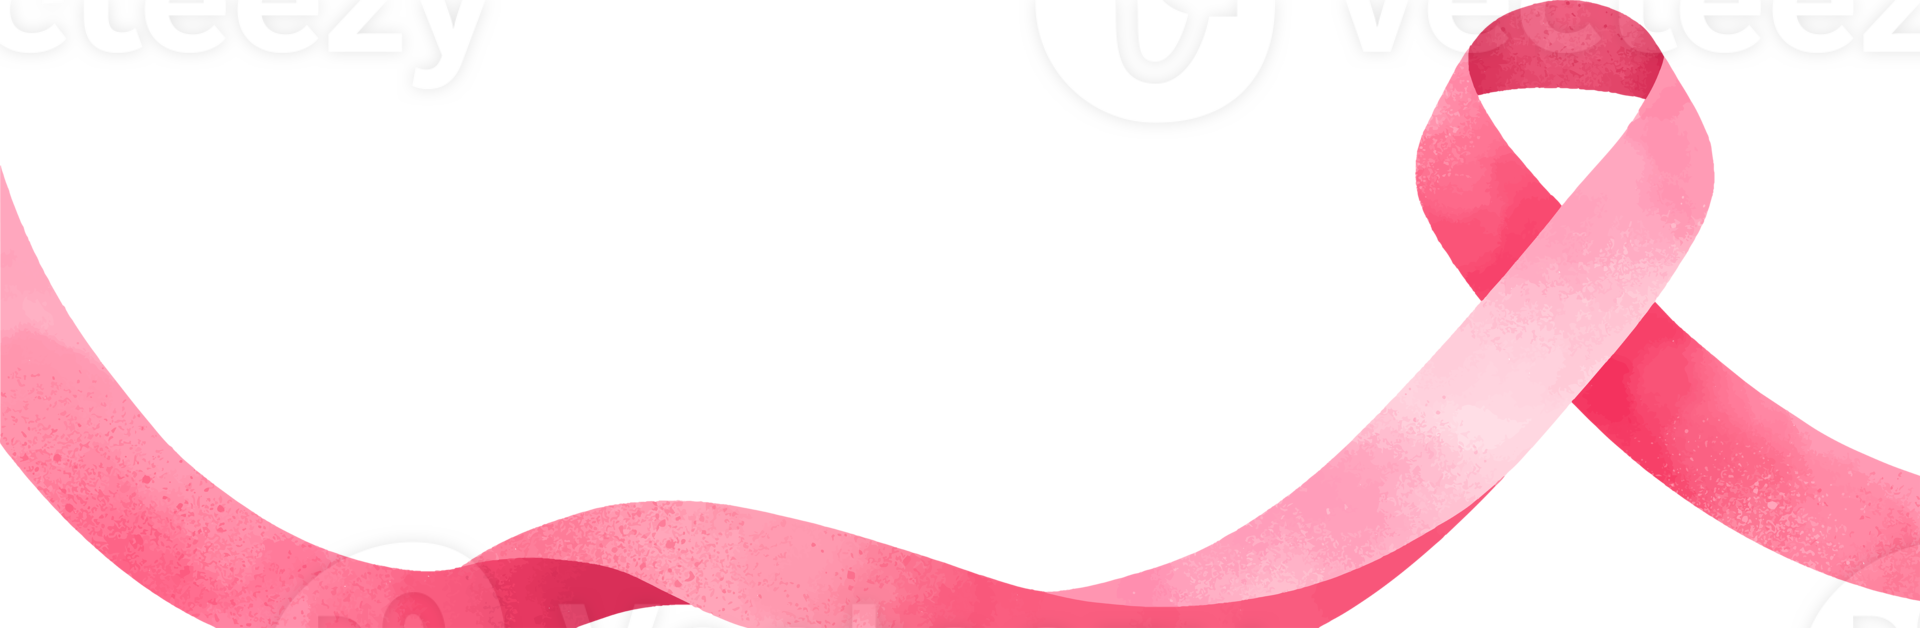 Pink breast cancer ribbon symbol border design, PNG file no background